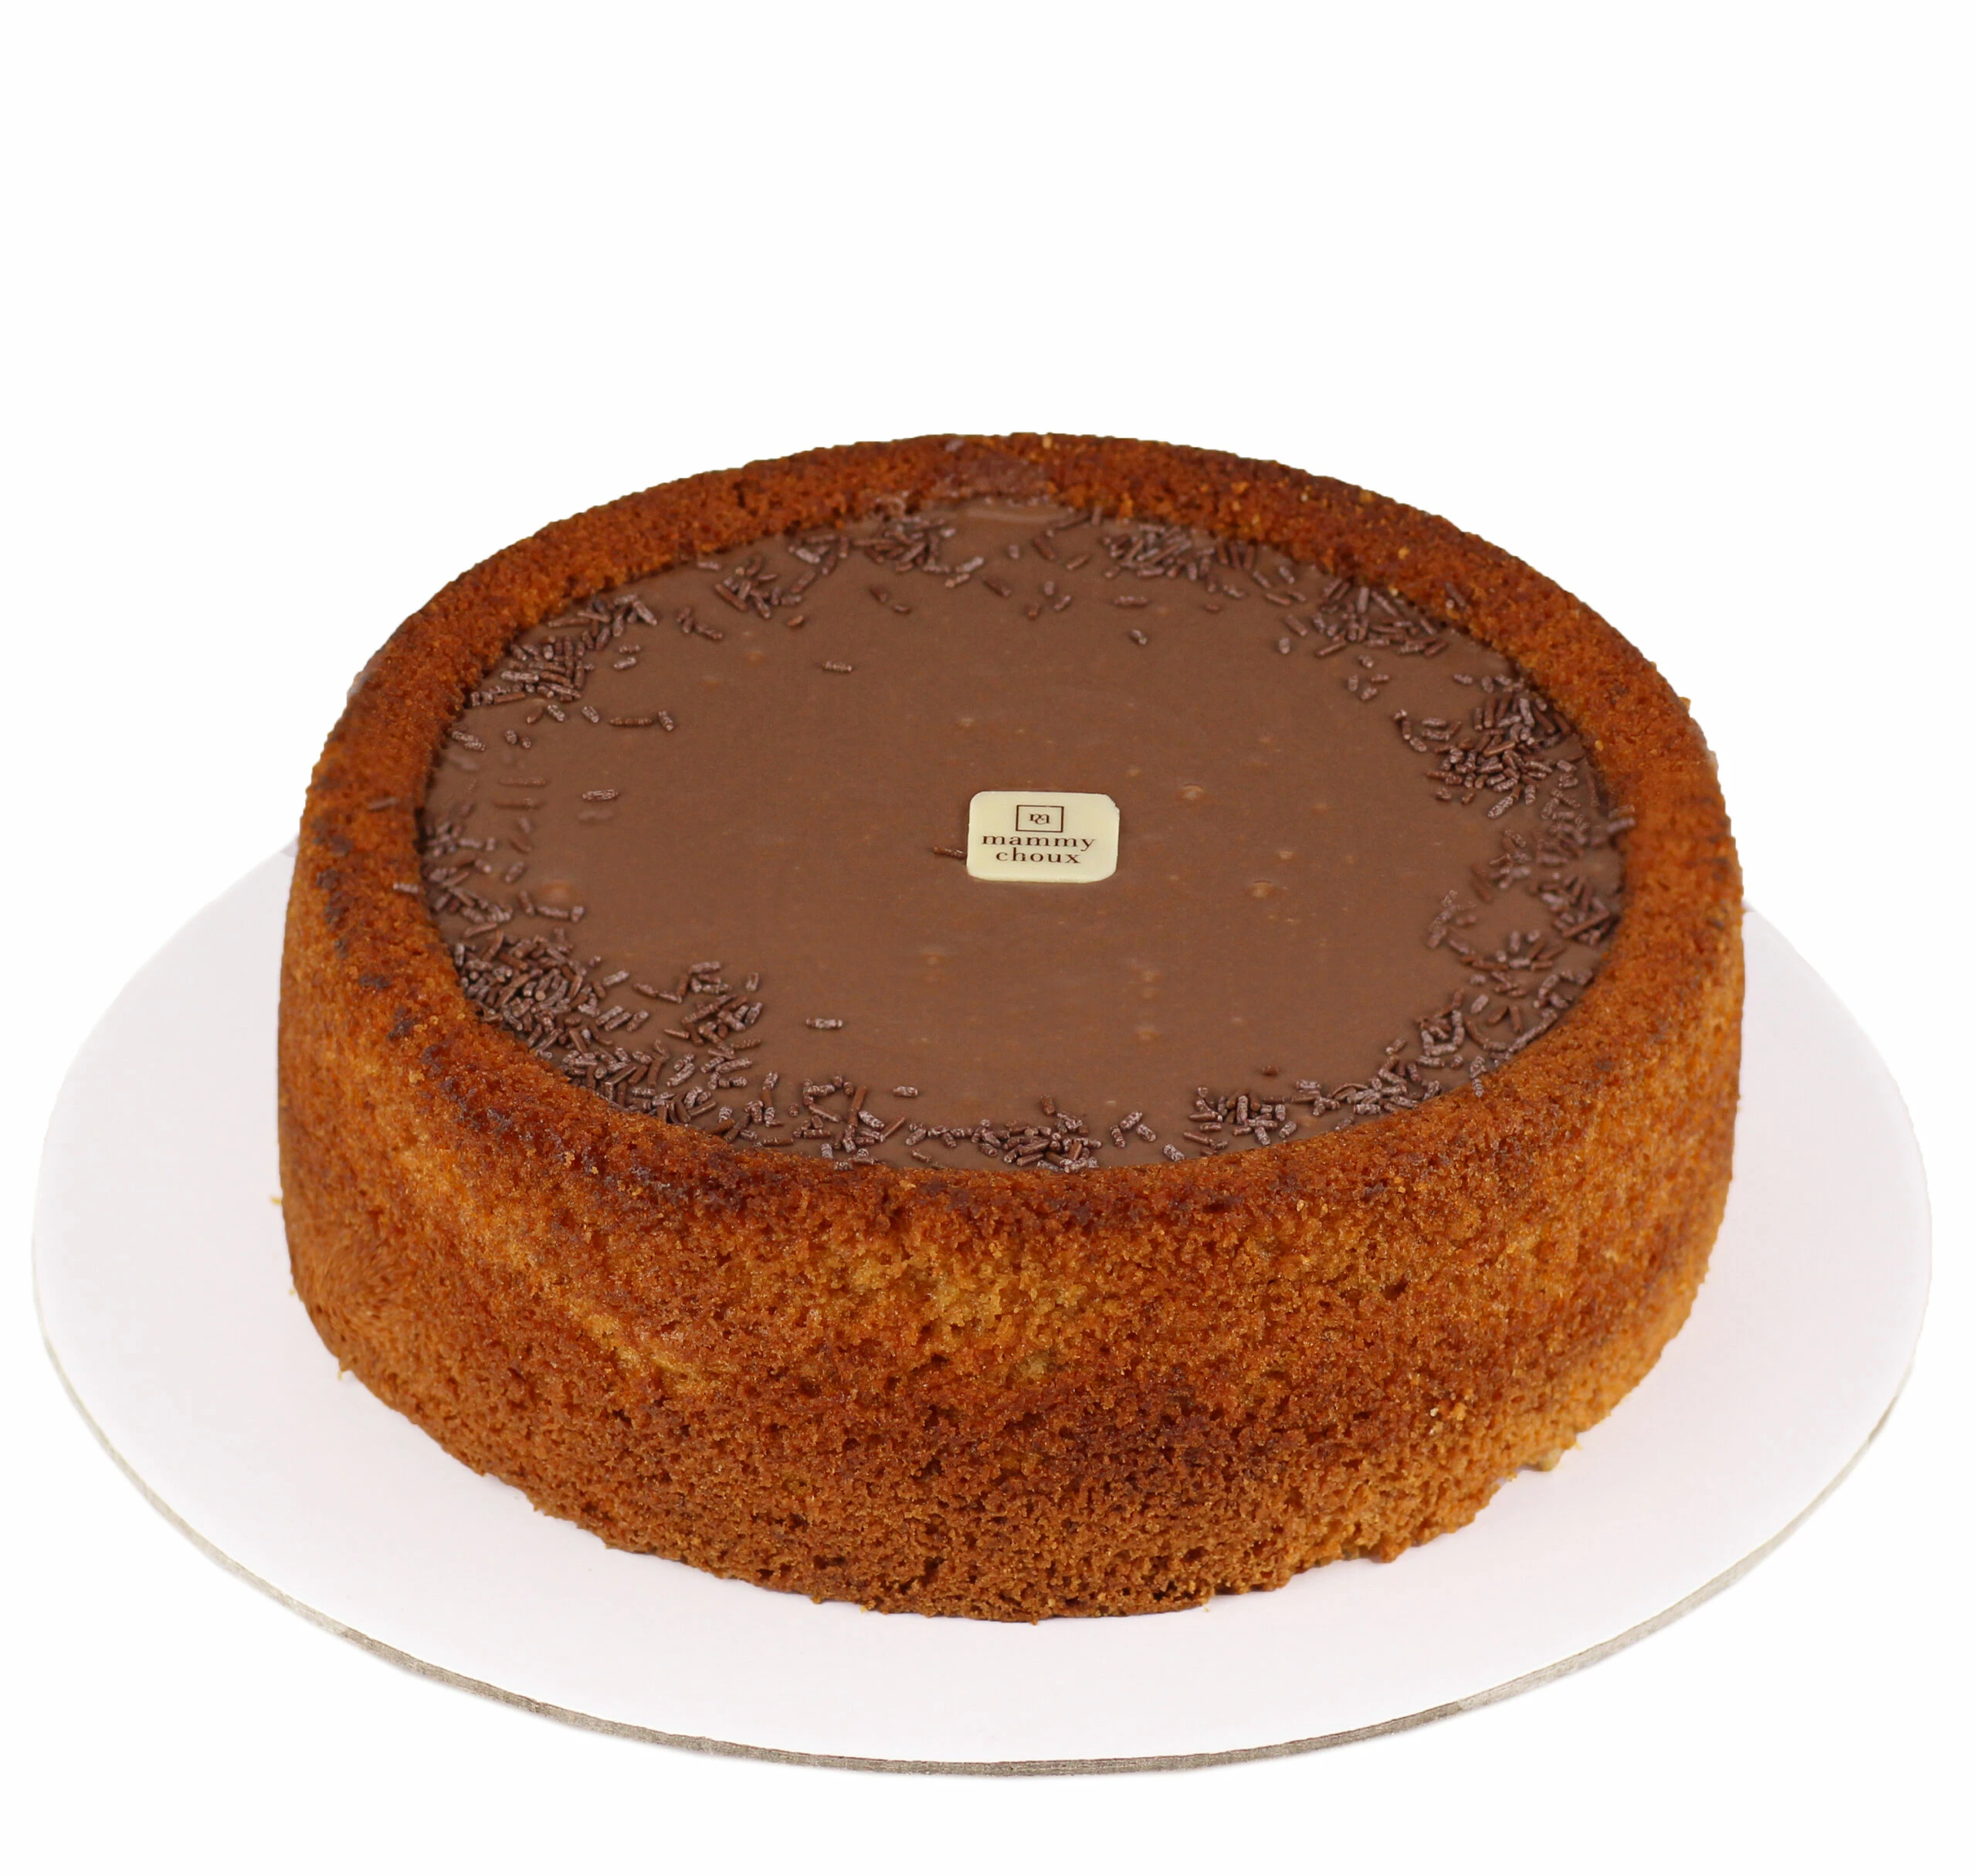 Cake01, Brigadeiro